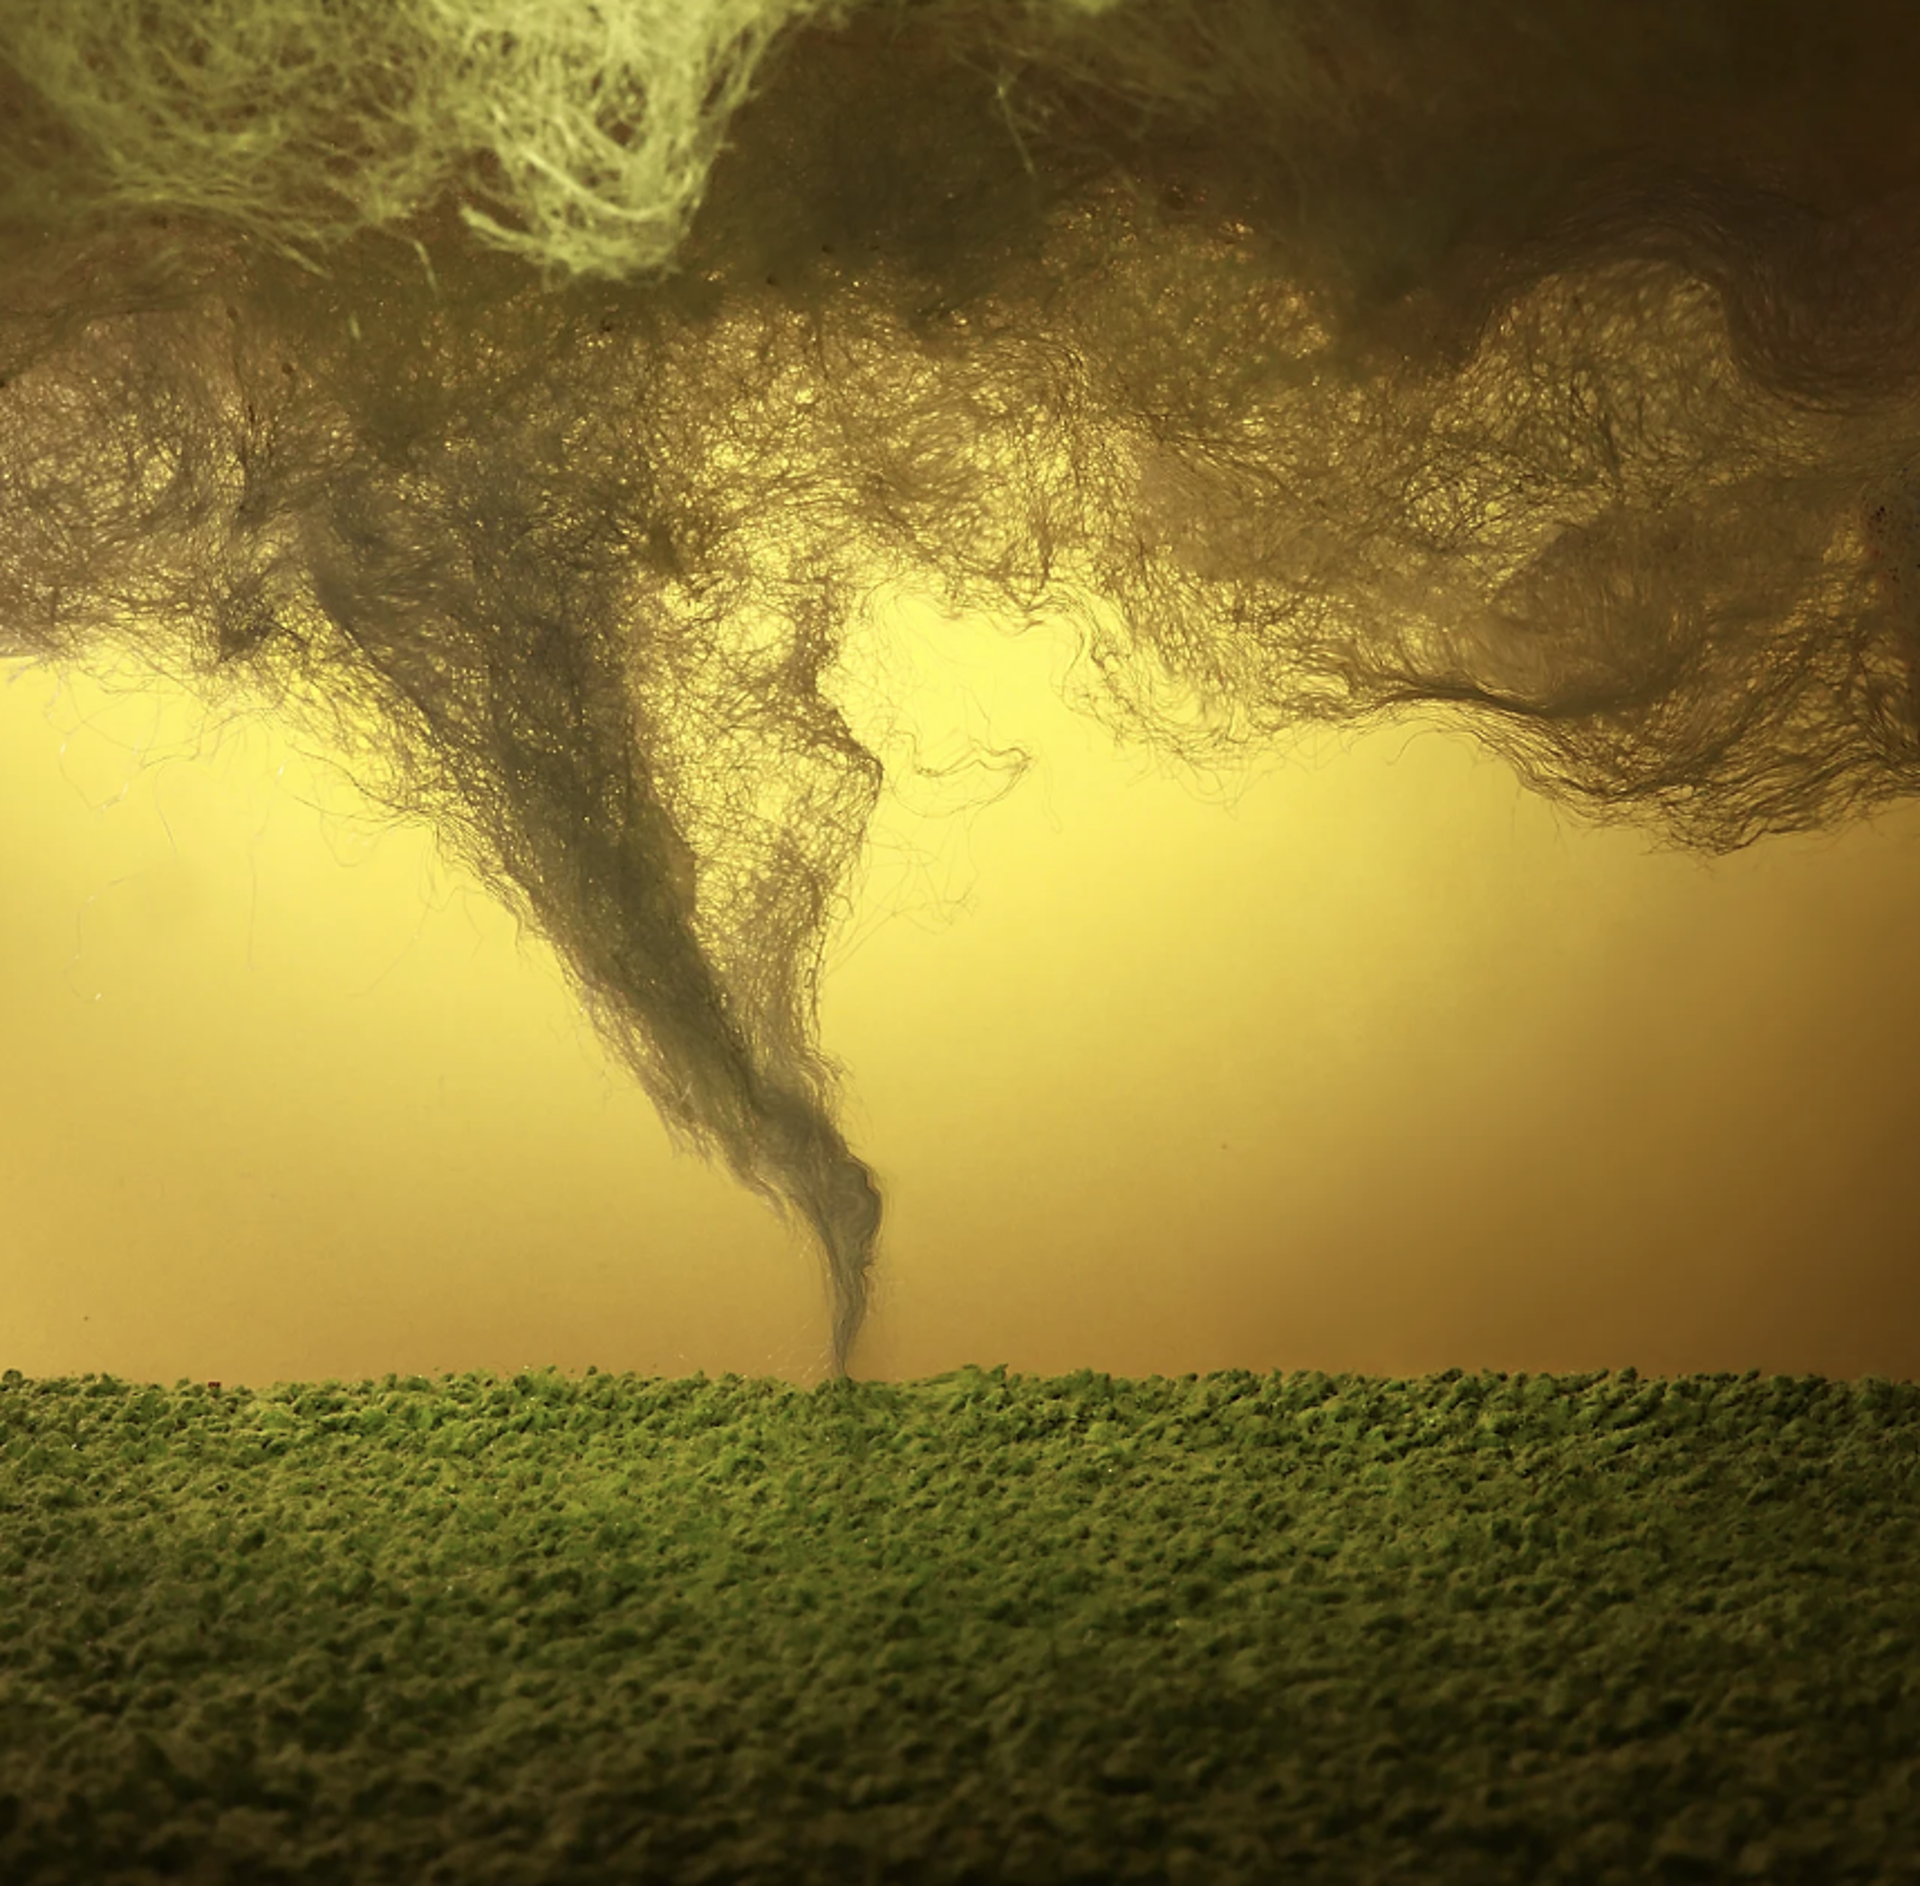 Tornado by Stephen Dorsett